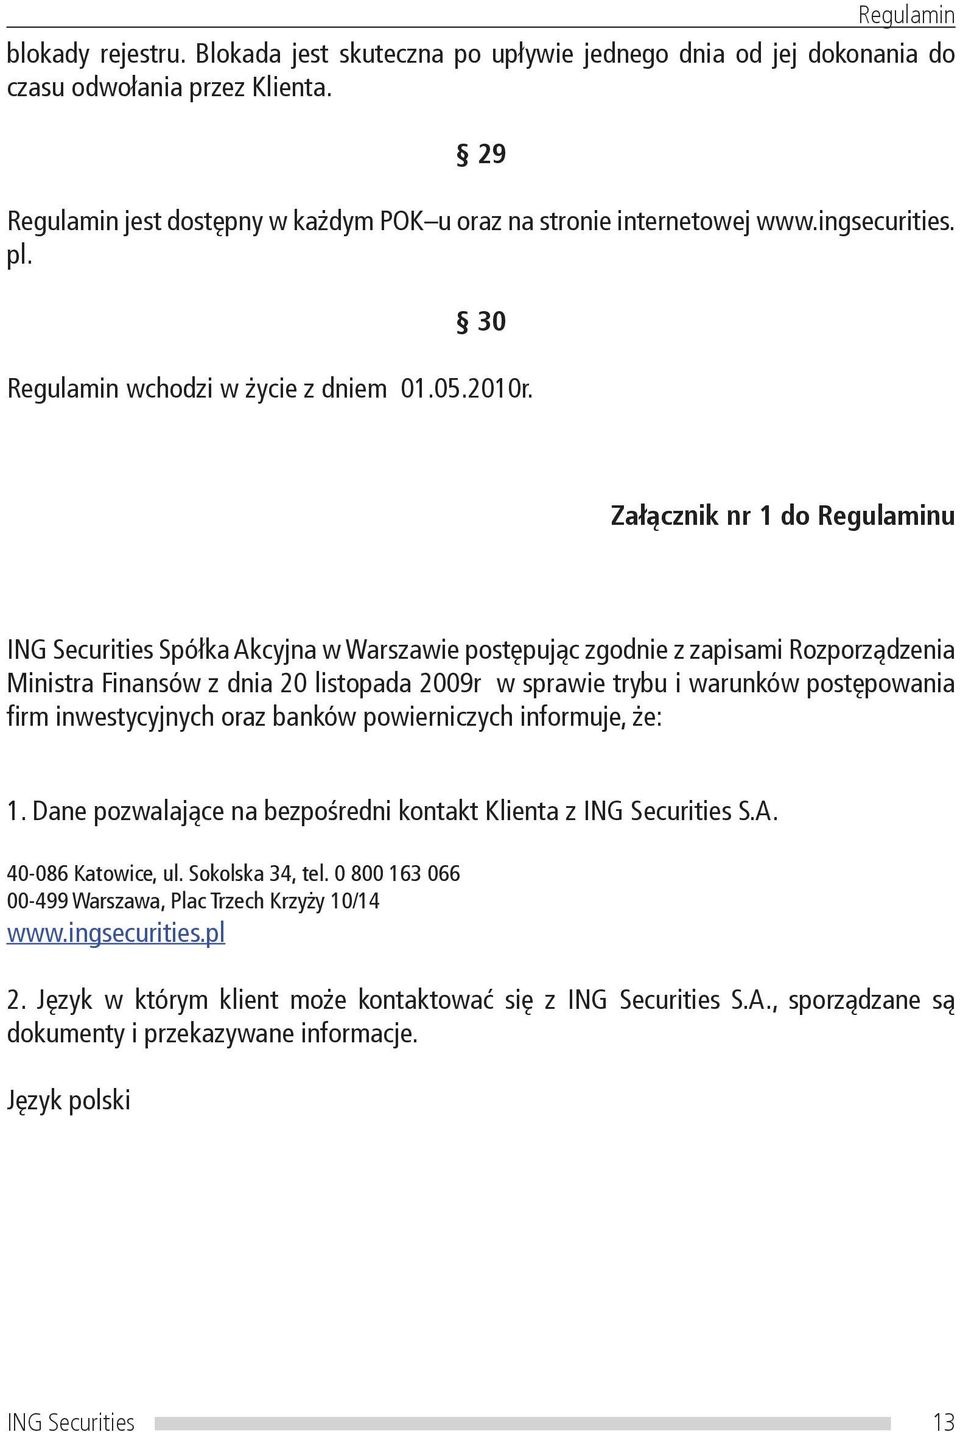 Załącznik nr 1 do Regulaminu ING Securities Spółka Akcyjna w Warszawie postępując zgodnie z zapisami Rozporządzenia Ministra Finansów z dnia 20 listopada 2009r w sprawie trybu i warunków postępowania